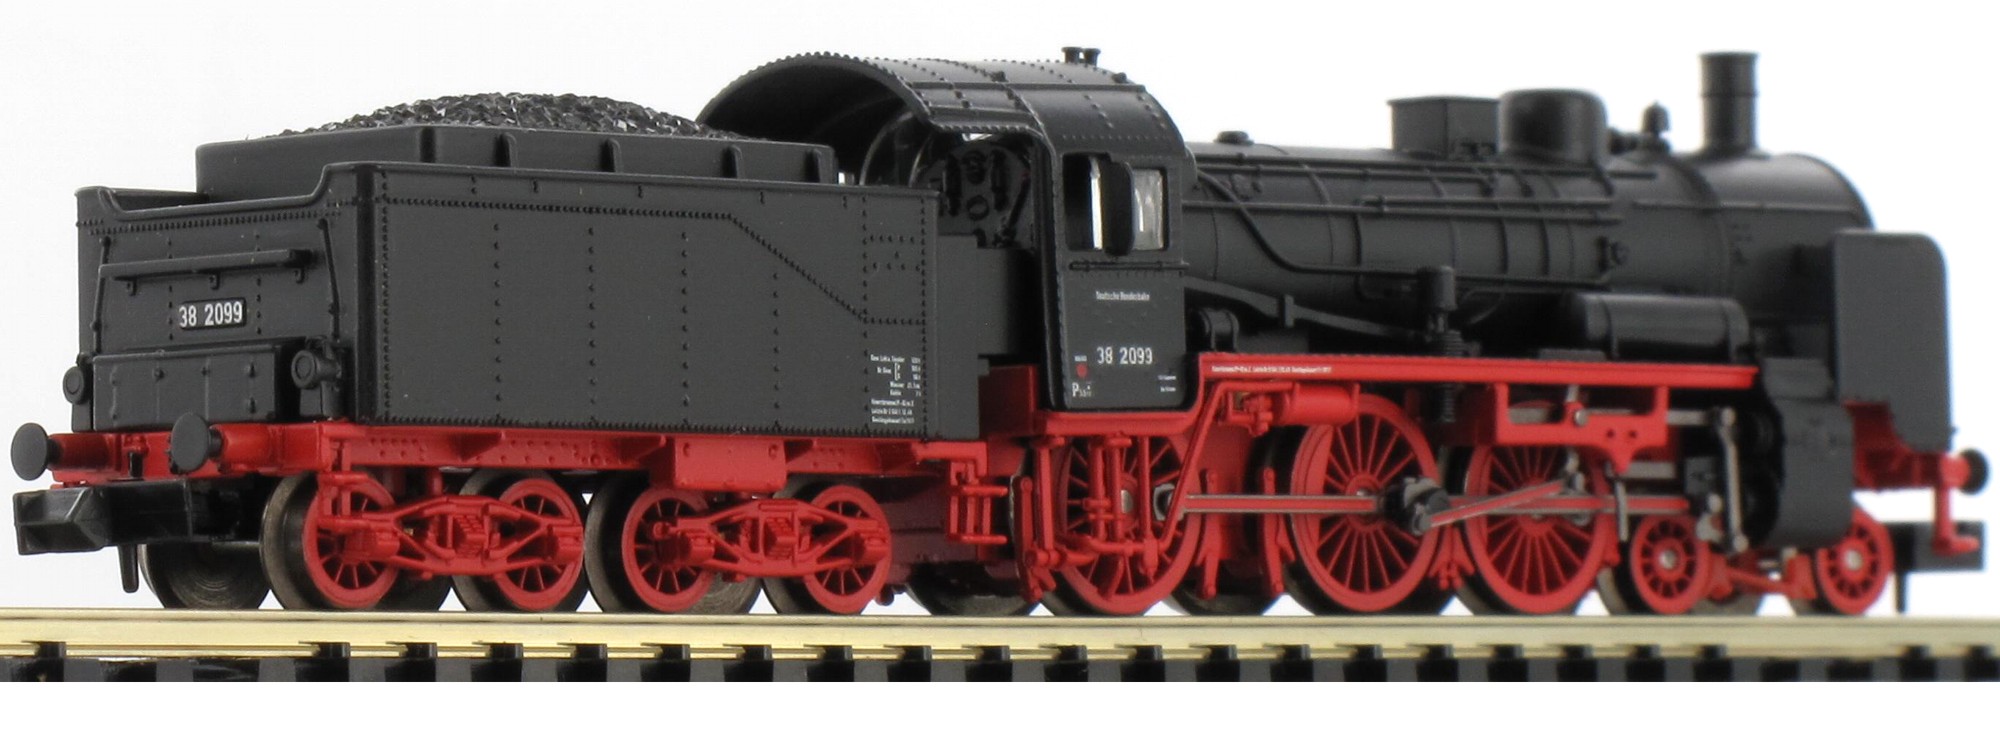 N Scale - Minitrix - 12420 - Locomotive, Steam, 4-6-0, Prussian P 8 - Deutsche Bundesbahn - 38 2099